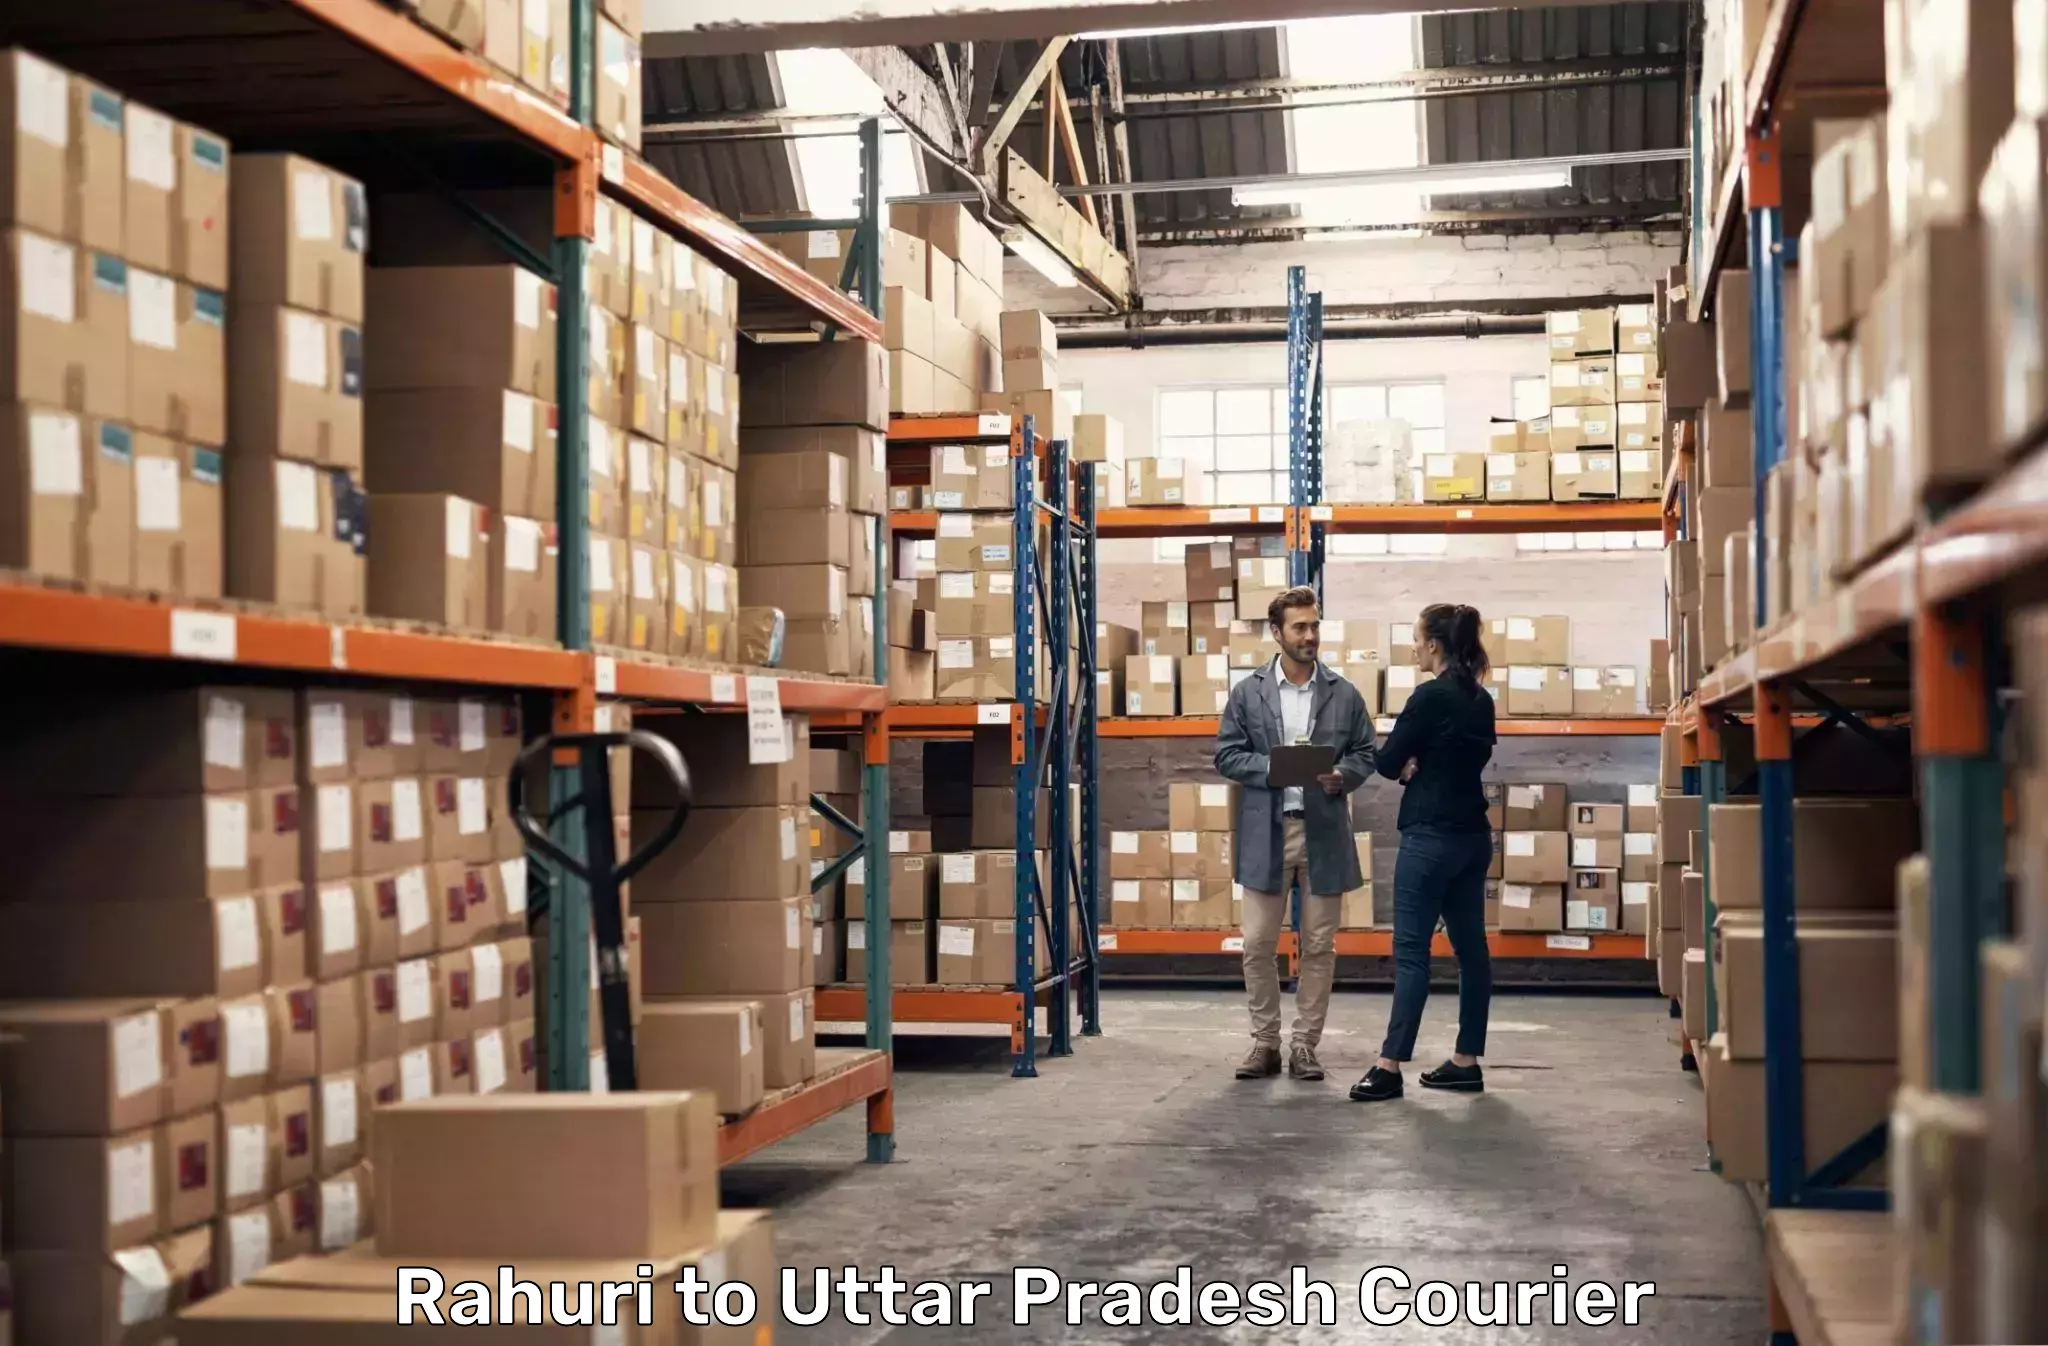 Professional courier handling in Rahuri to Sahatwar